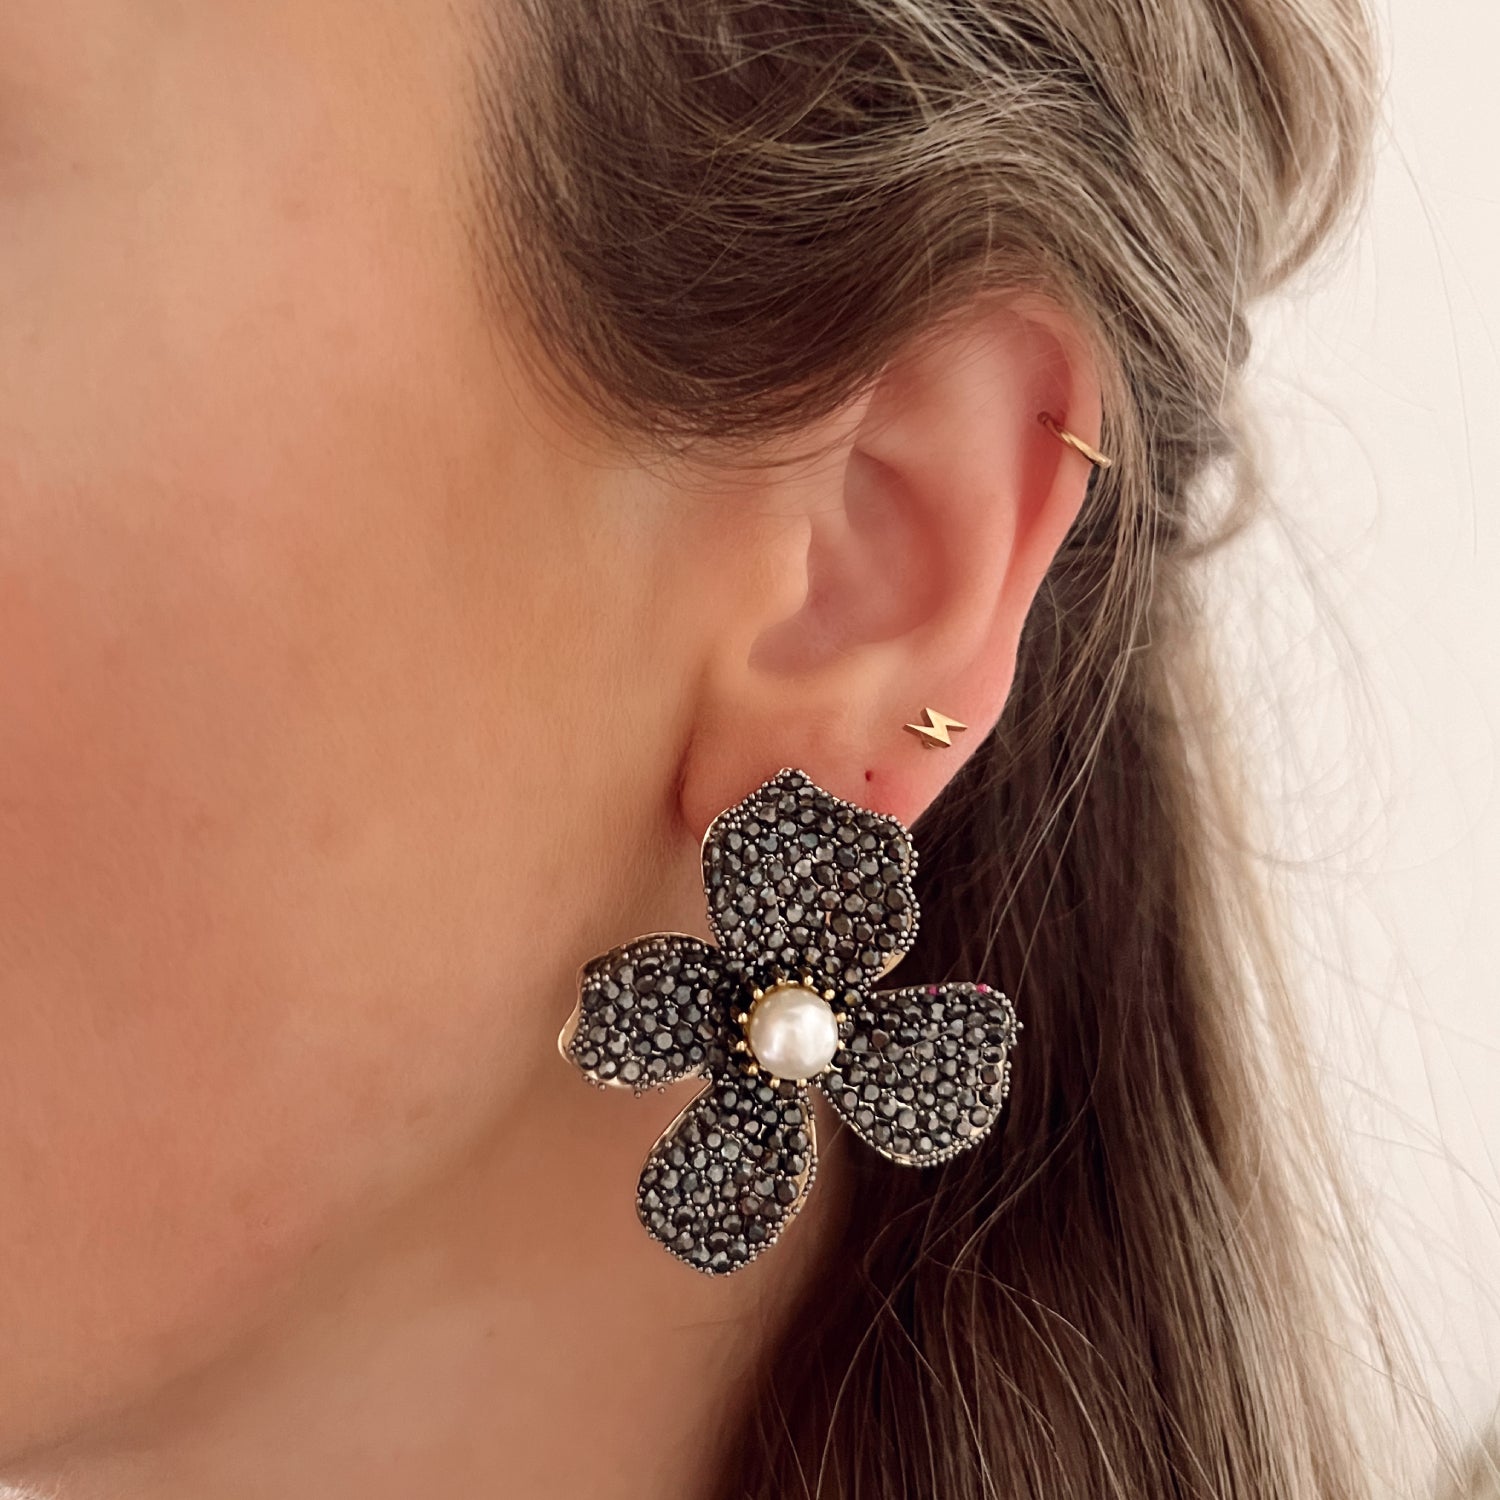 Zwarte statement oorbellen in de vorm van een bloem, ingelegd met steentjes. Afmetingen: 5 cm. Zwarte grote statement earrings bloem met steentjes. Grote oorbellen zwarte bloem.